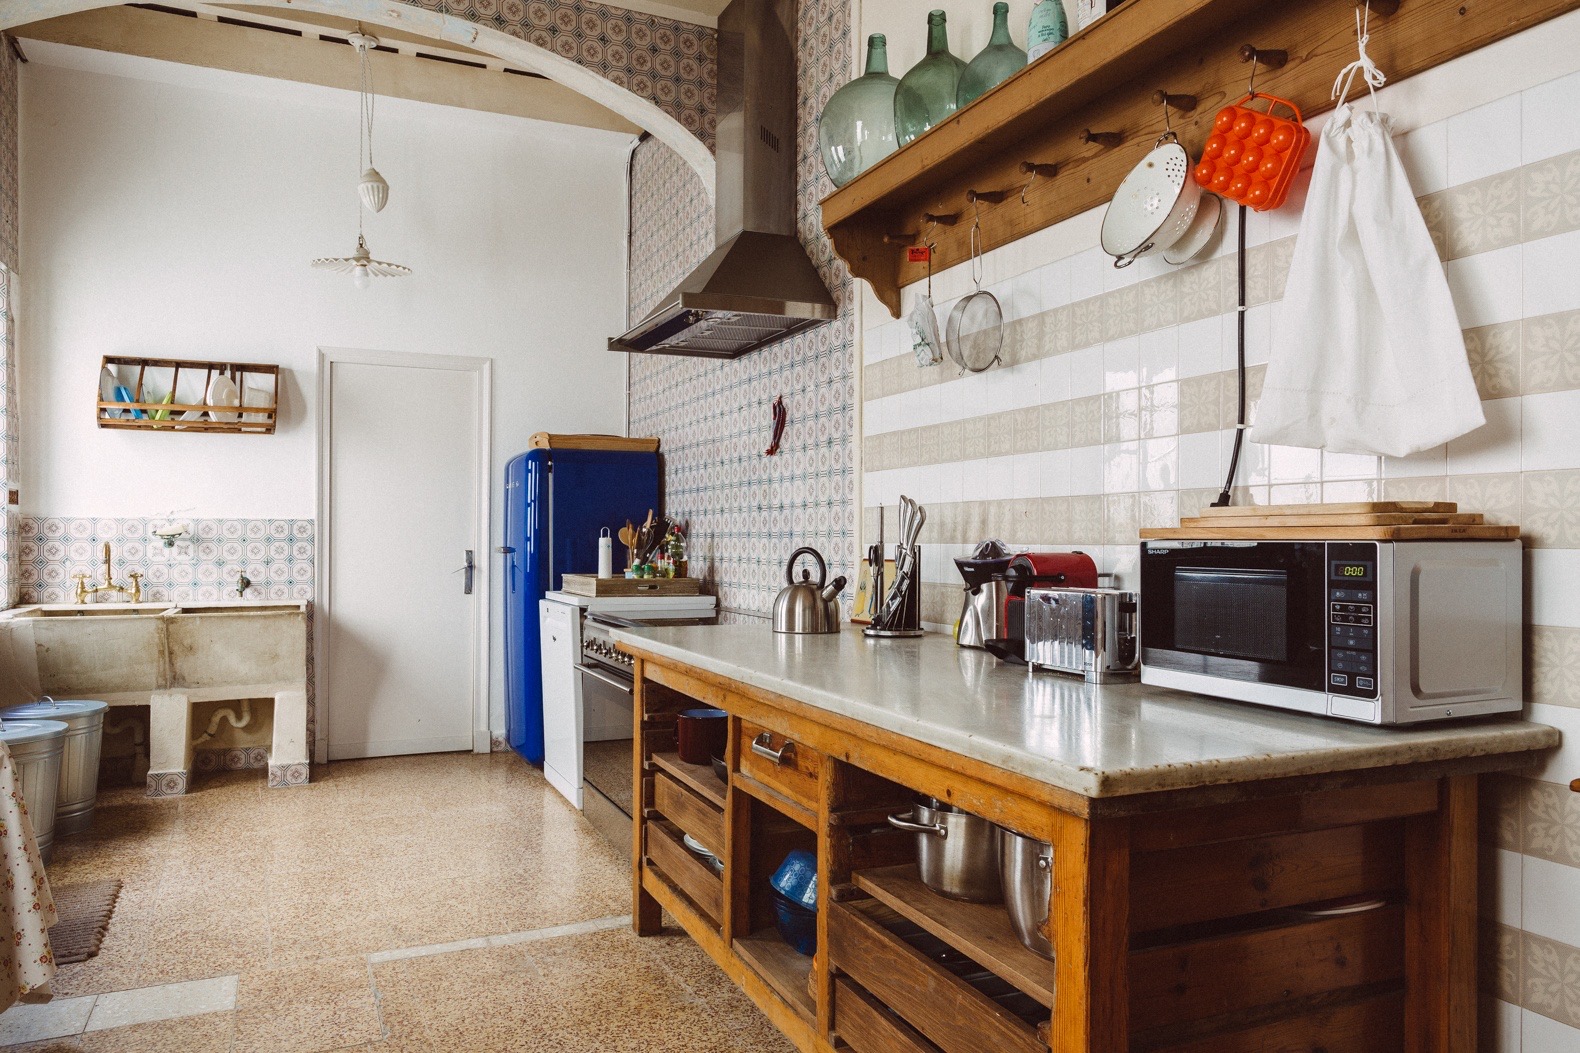  Dapur  Vintage Jadul  Sederhana Thegorbalsla